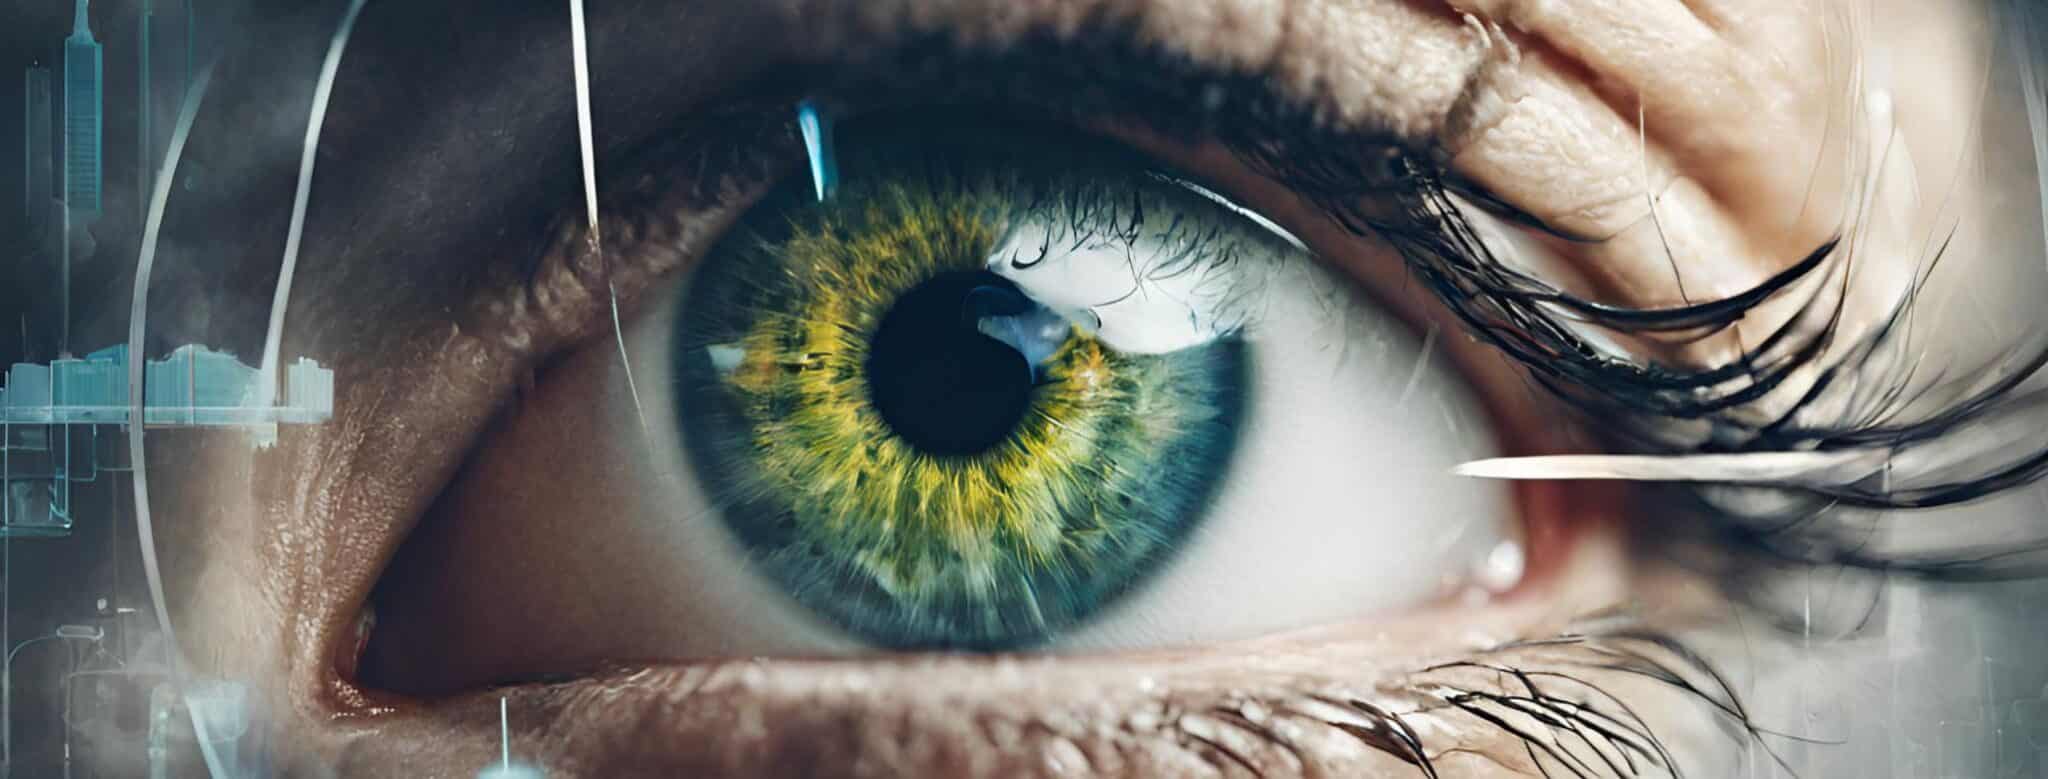 12 de marzo. Día Mundial del Glaucoma. LOS DAÑOS DEL GLAUCOMA SE PUEDEN MINIMIZAR MEDIANTE LA DETECCIÓN PREZCOZ